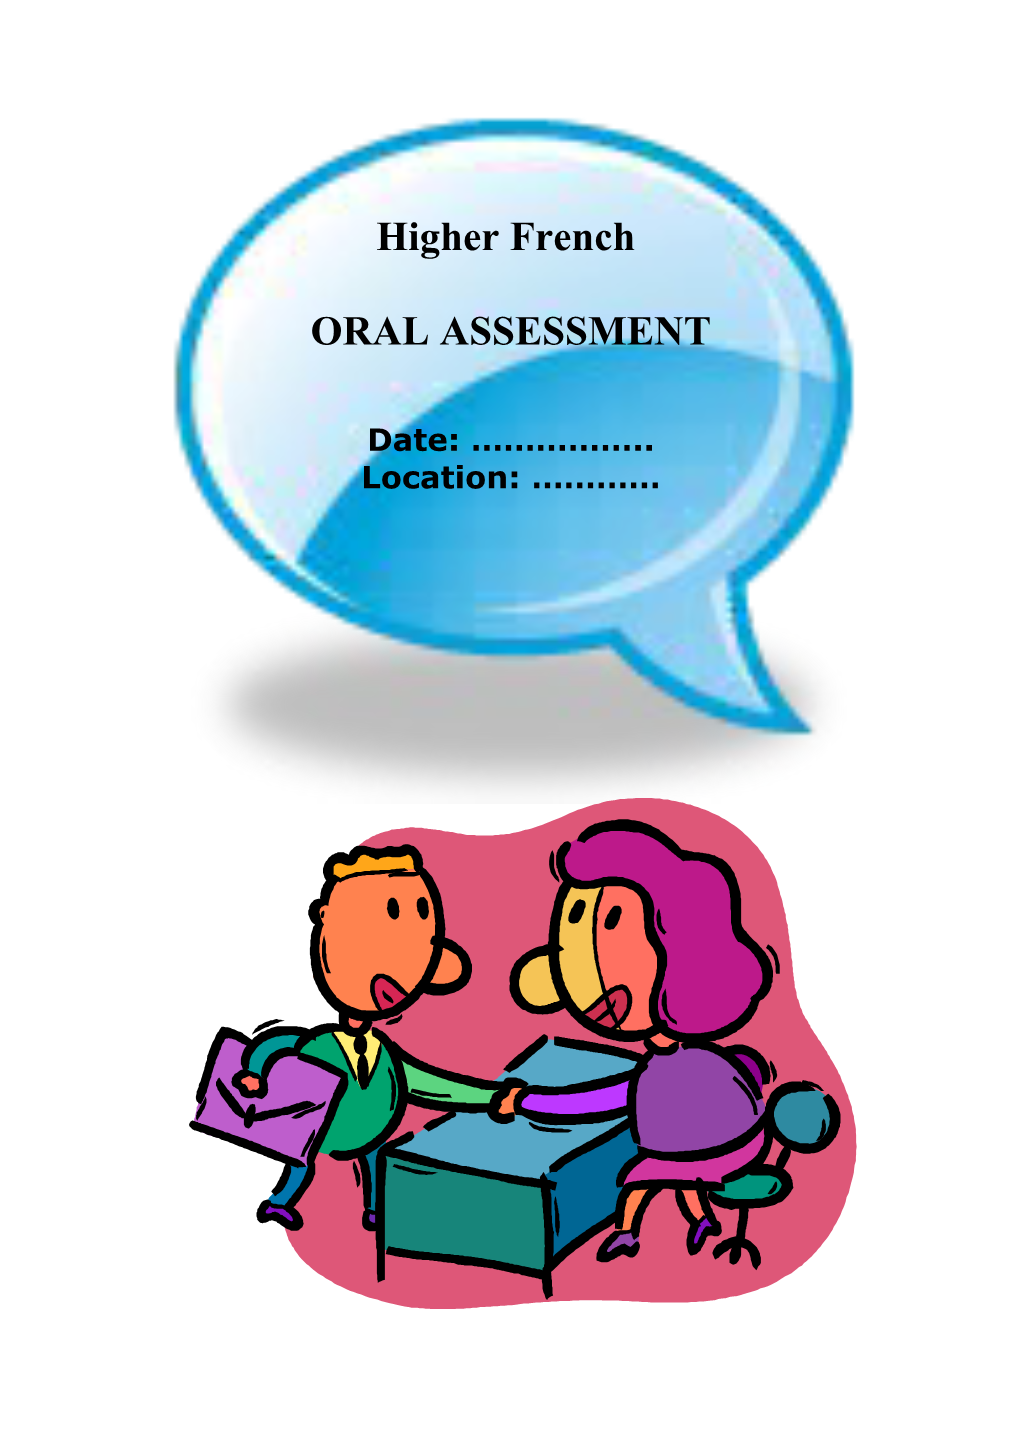 Arrangements for Oral Assessment